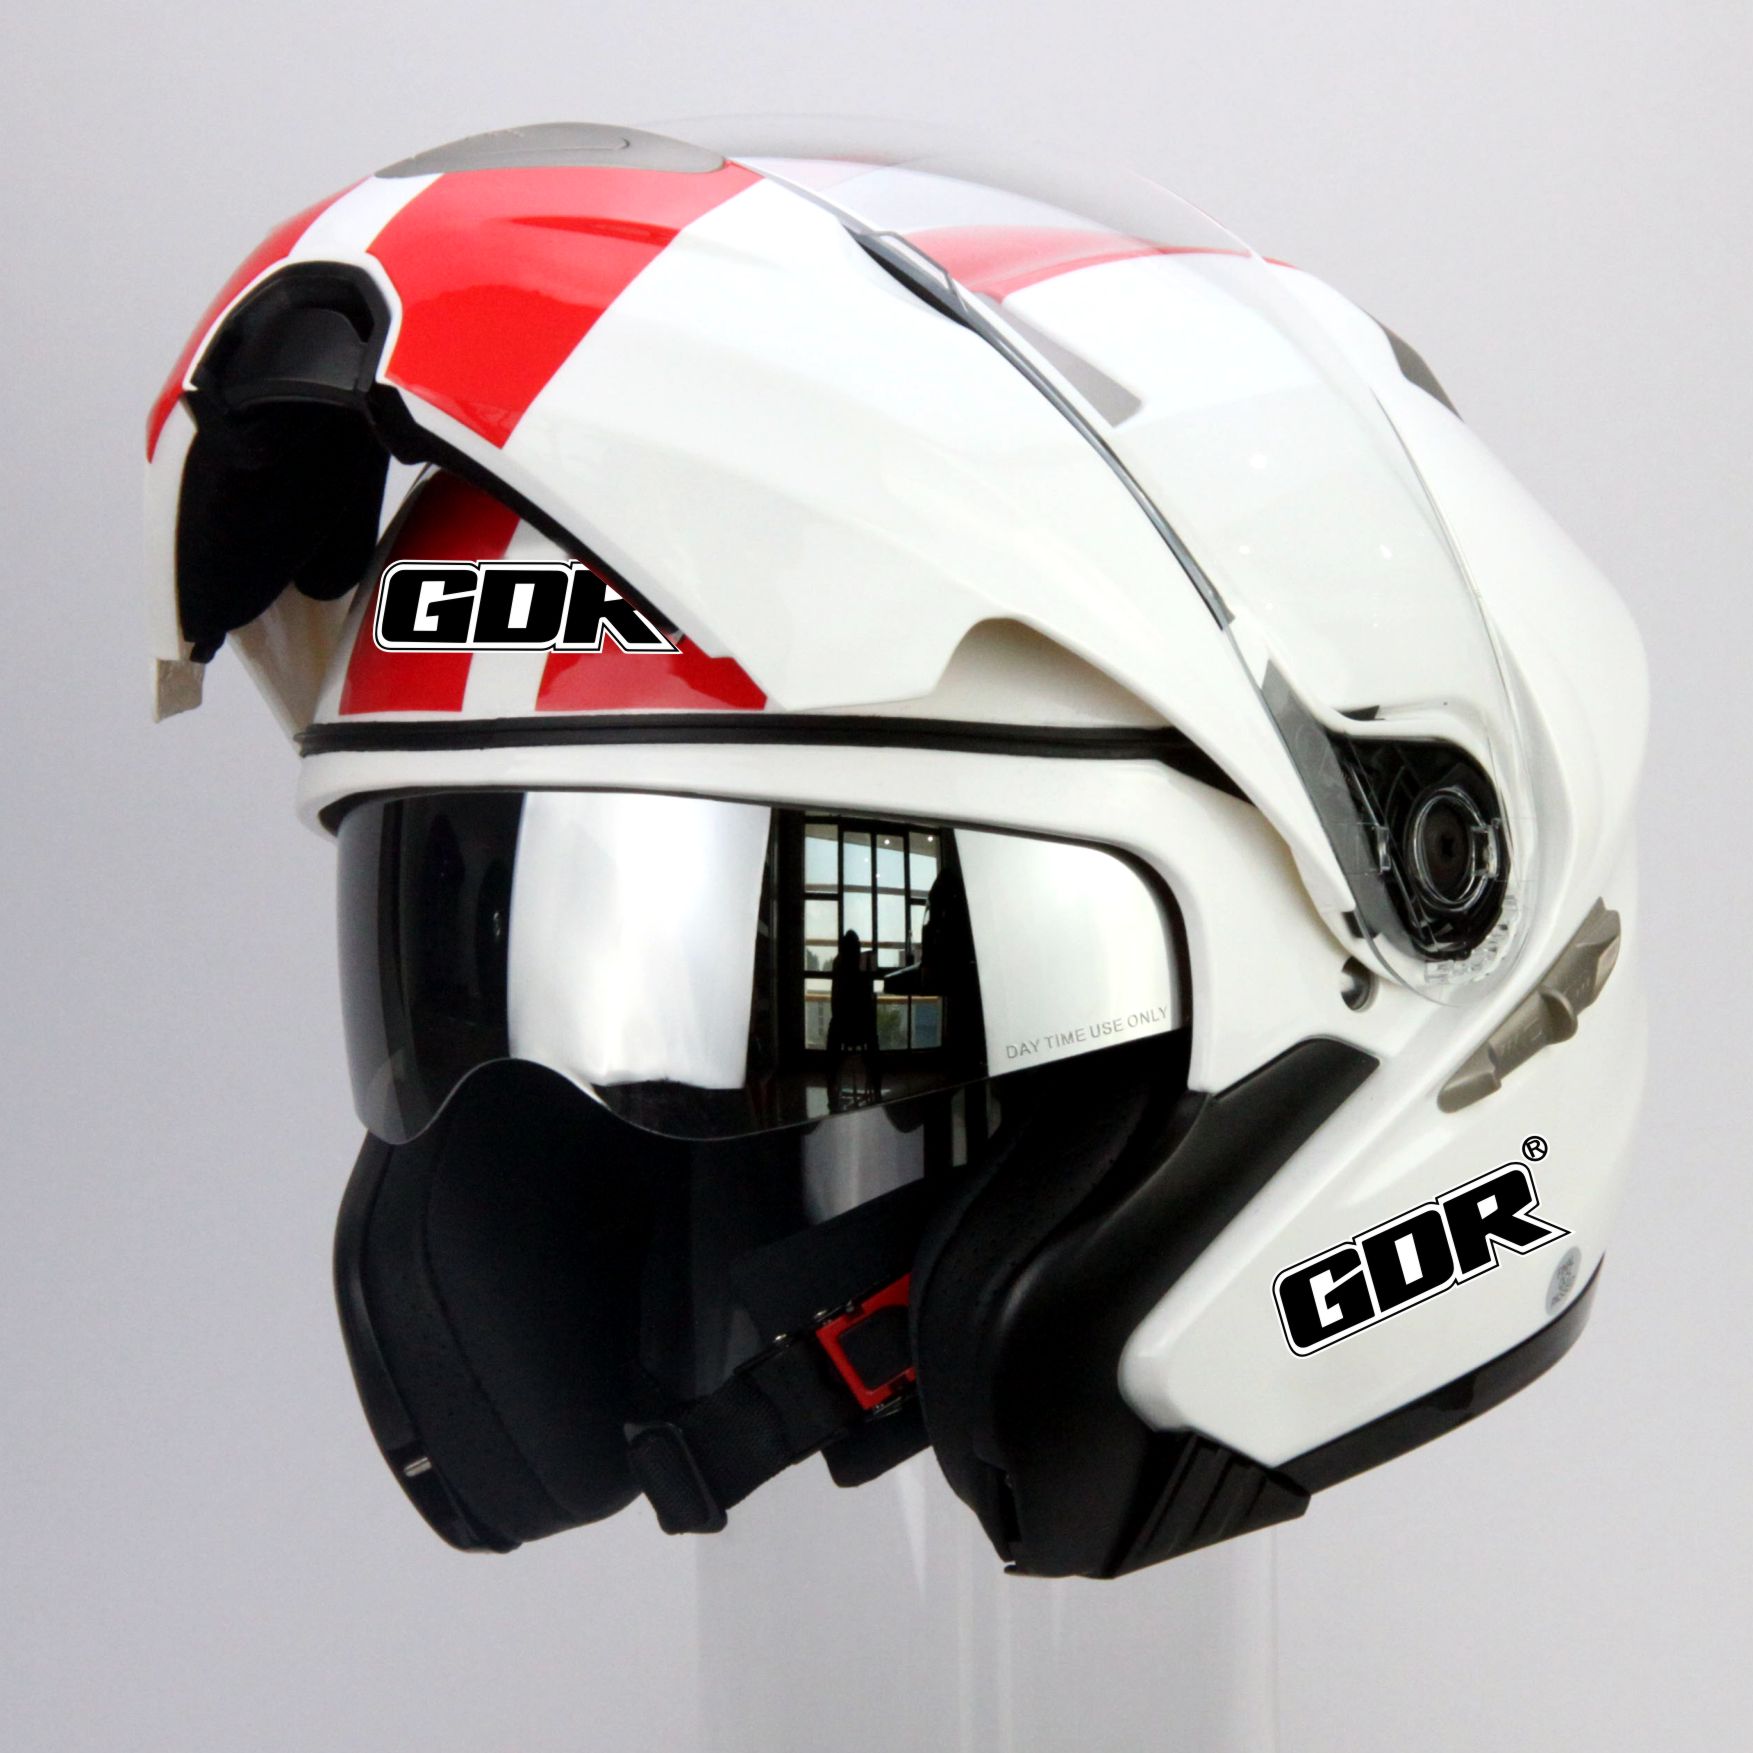 揭面头盔 DOT 双镜片头盔 组合式全盔  摩托车头盔 佳德士摩托车揭面双镜片头盔